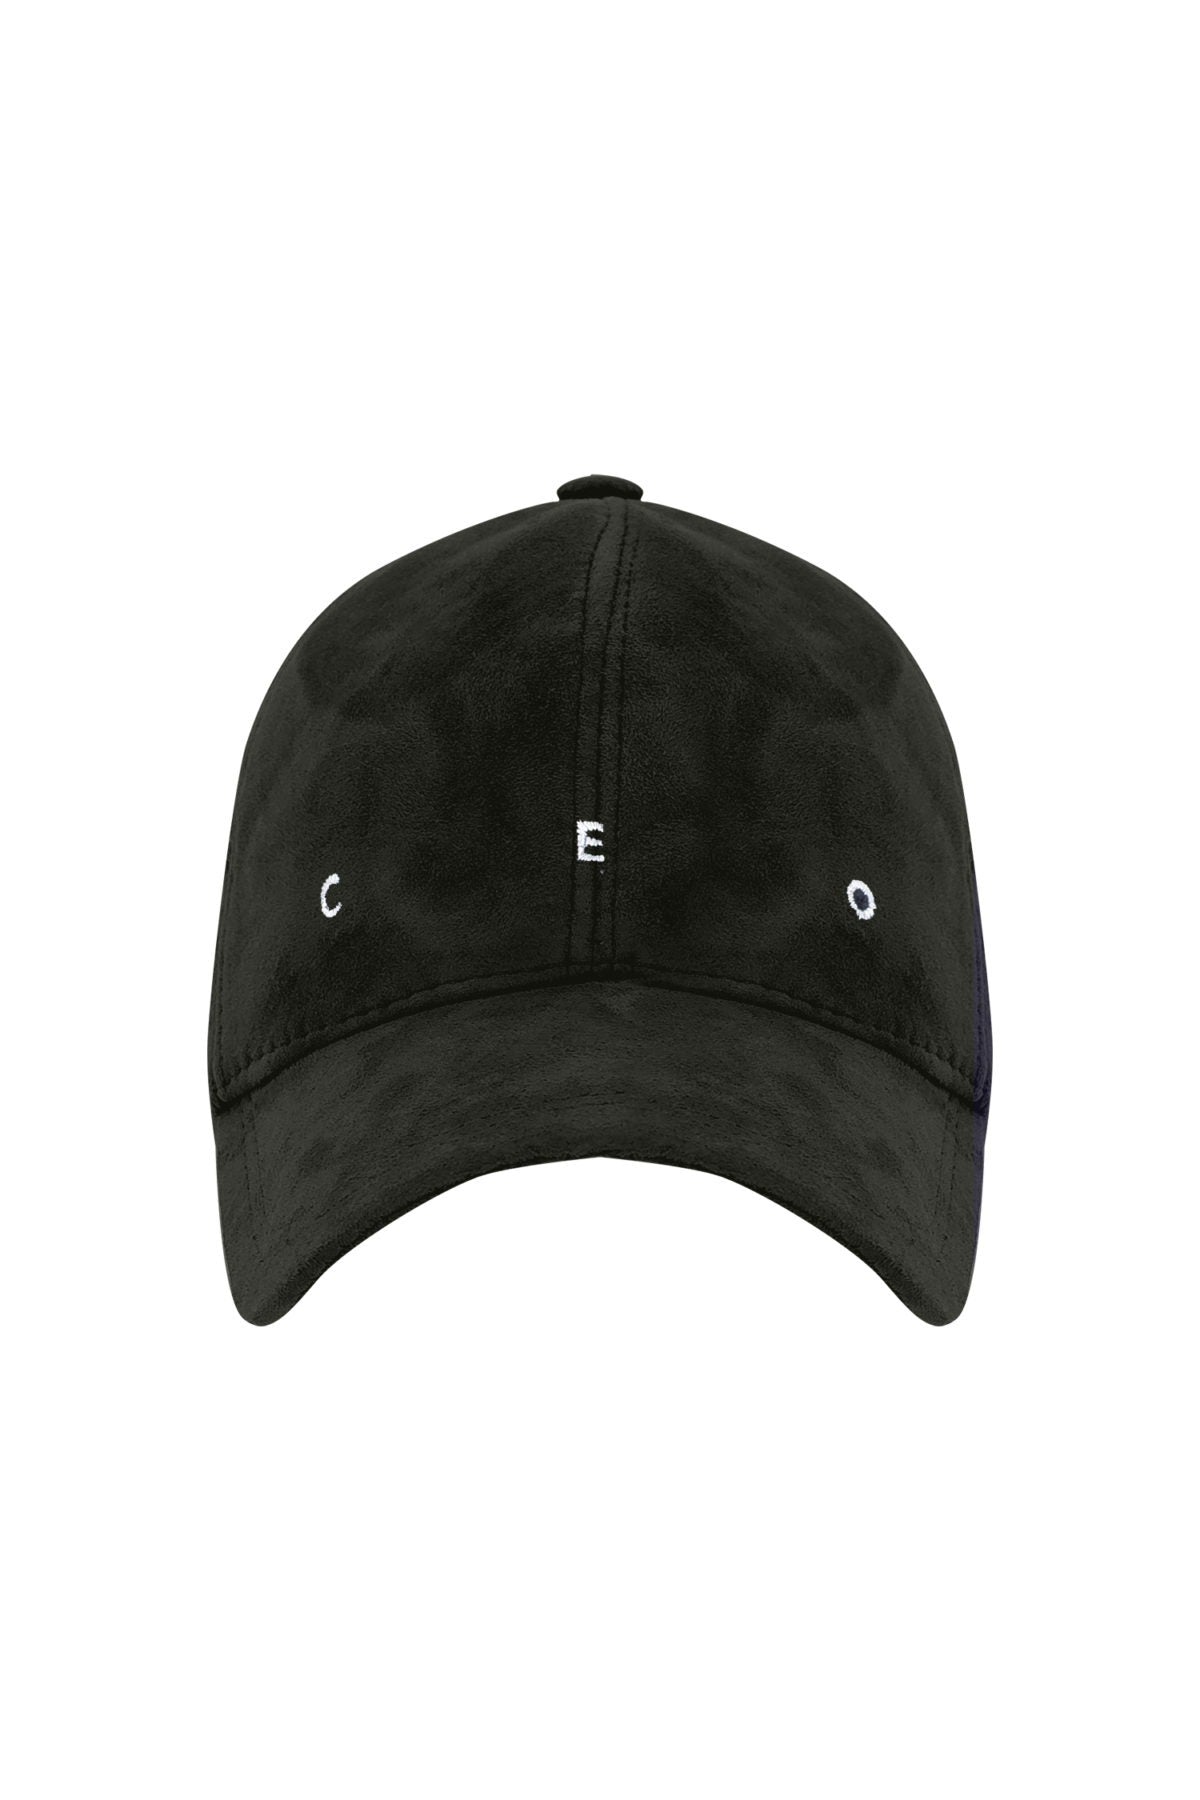 CEO - Ördek Yeşili